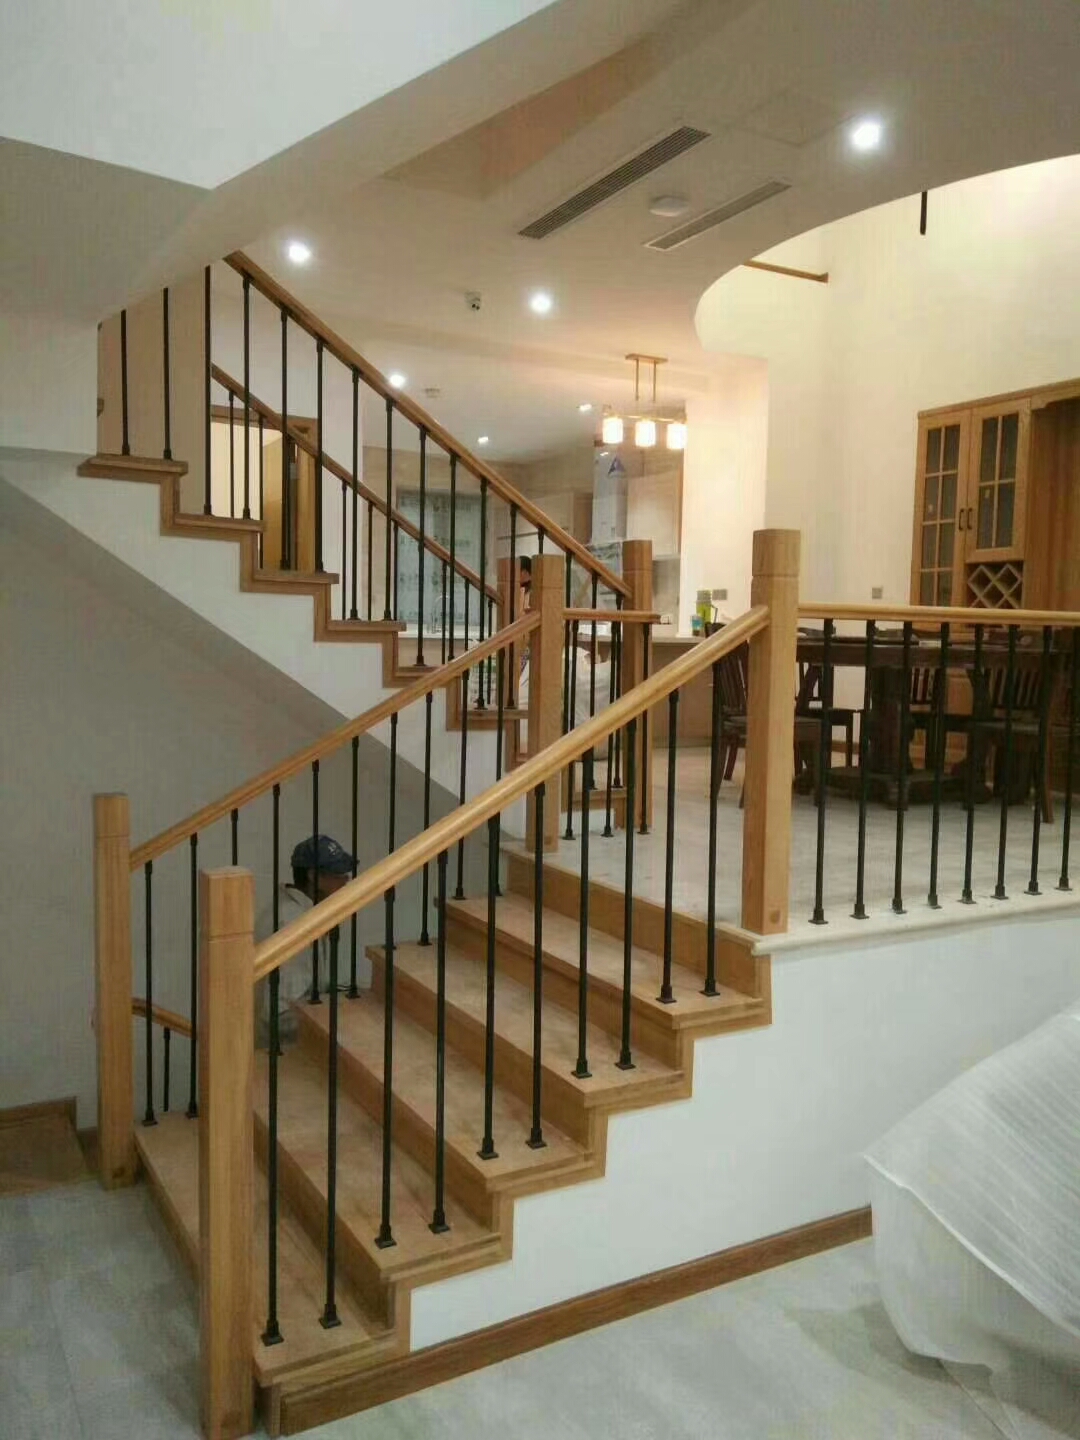 木质楼梯扶手价格 木质楼梯扶手怎么样 - 装修保障网